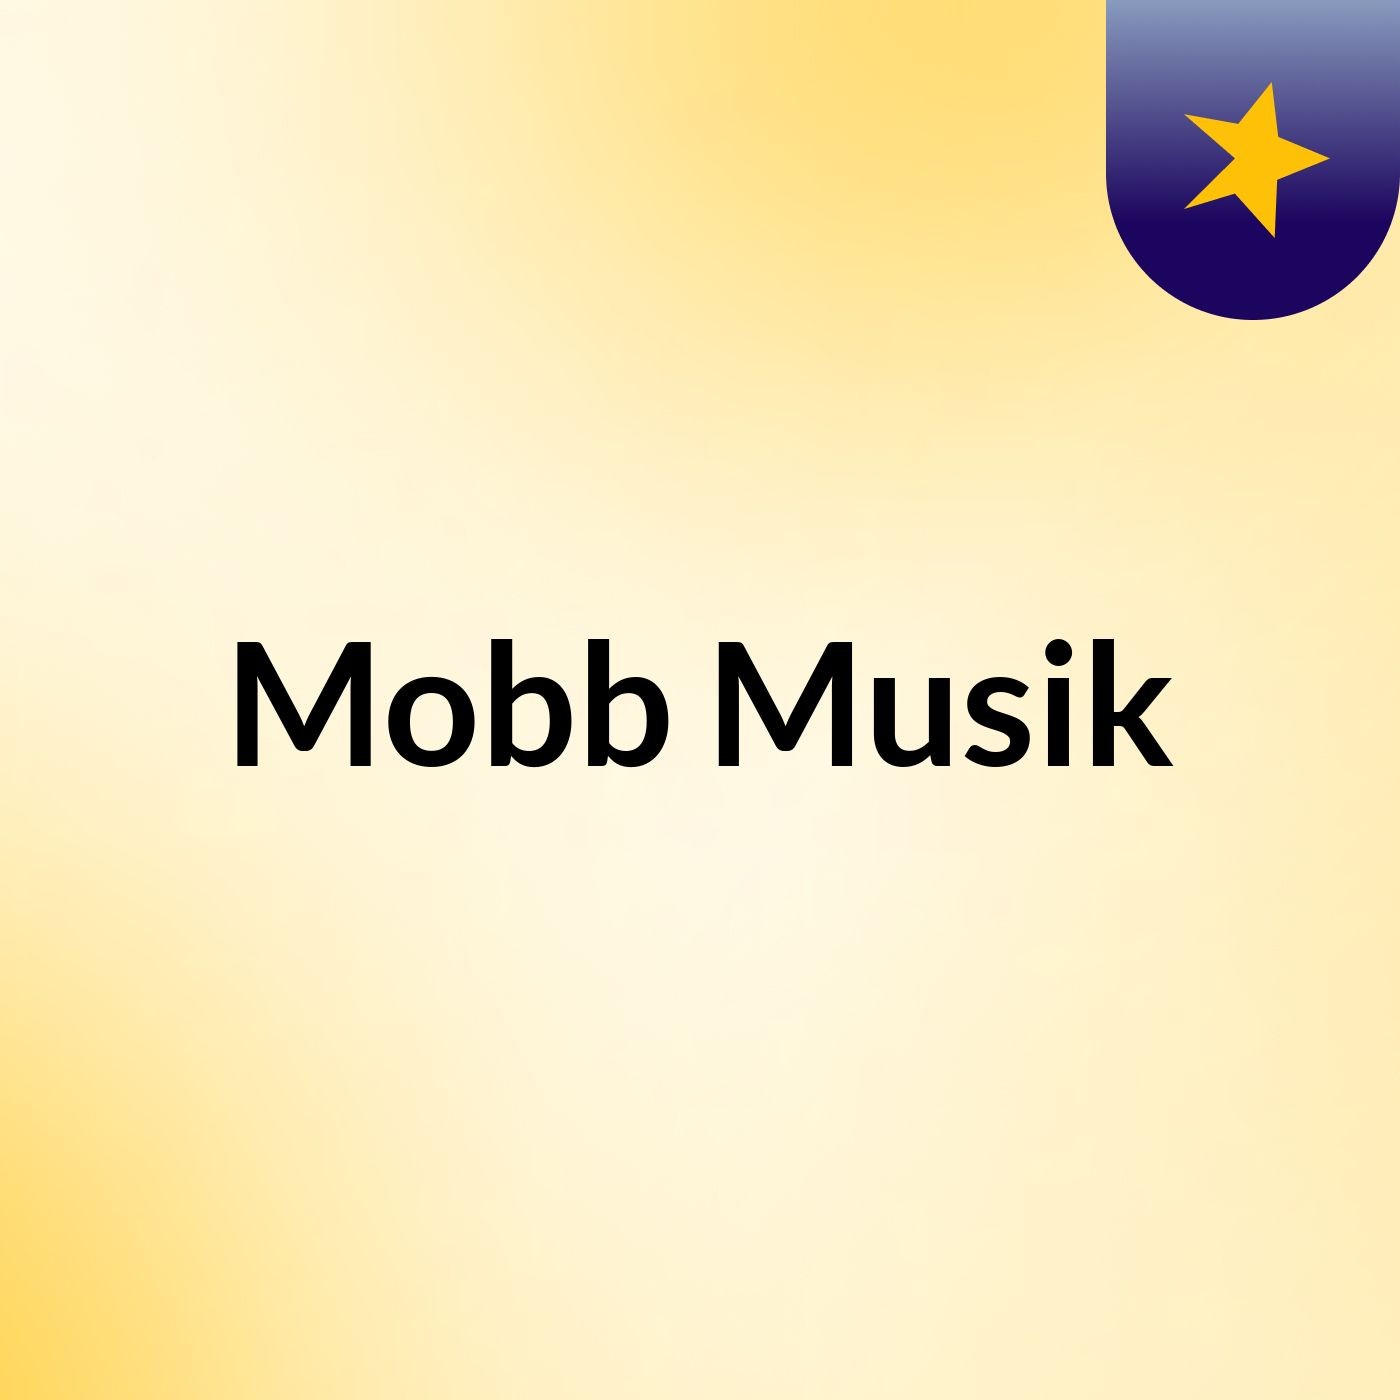 Mobb Musik